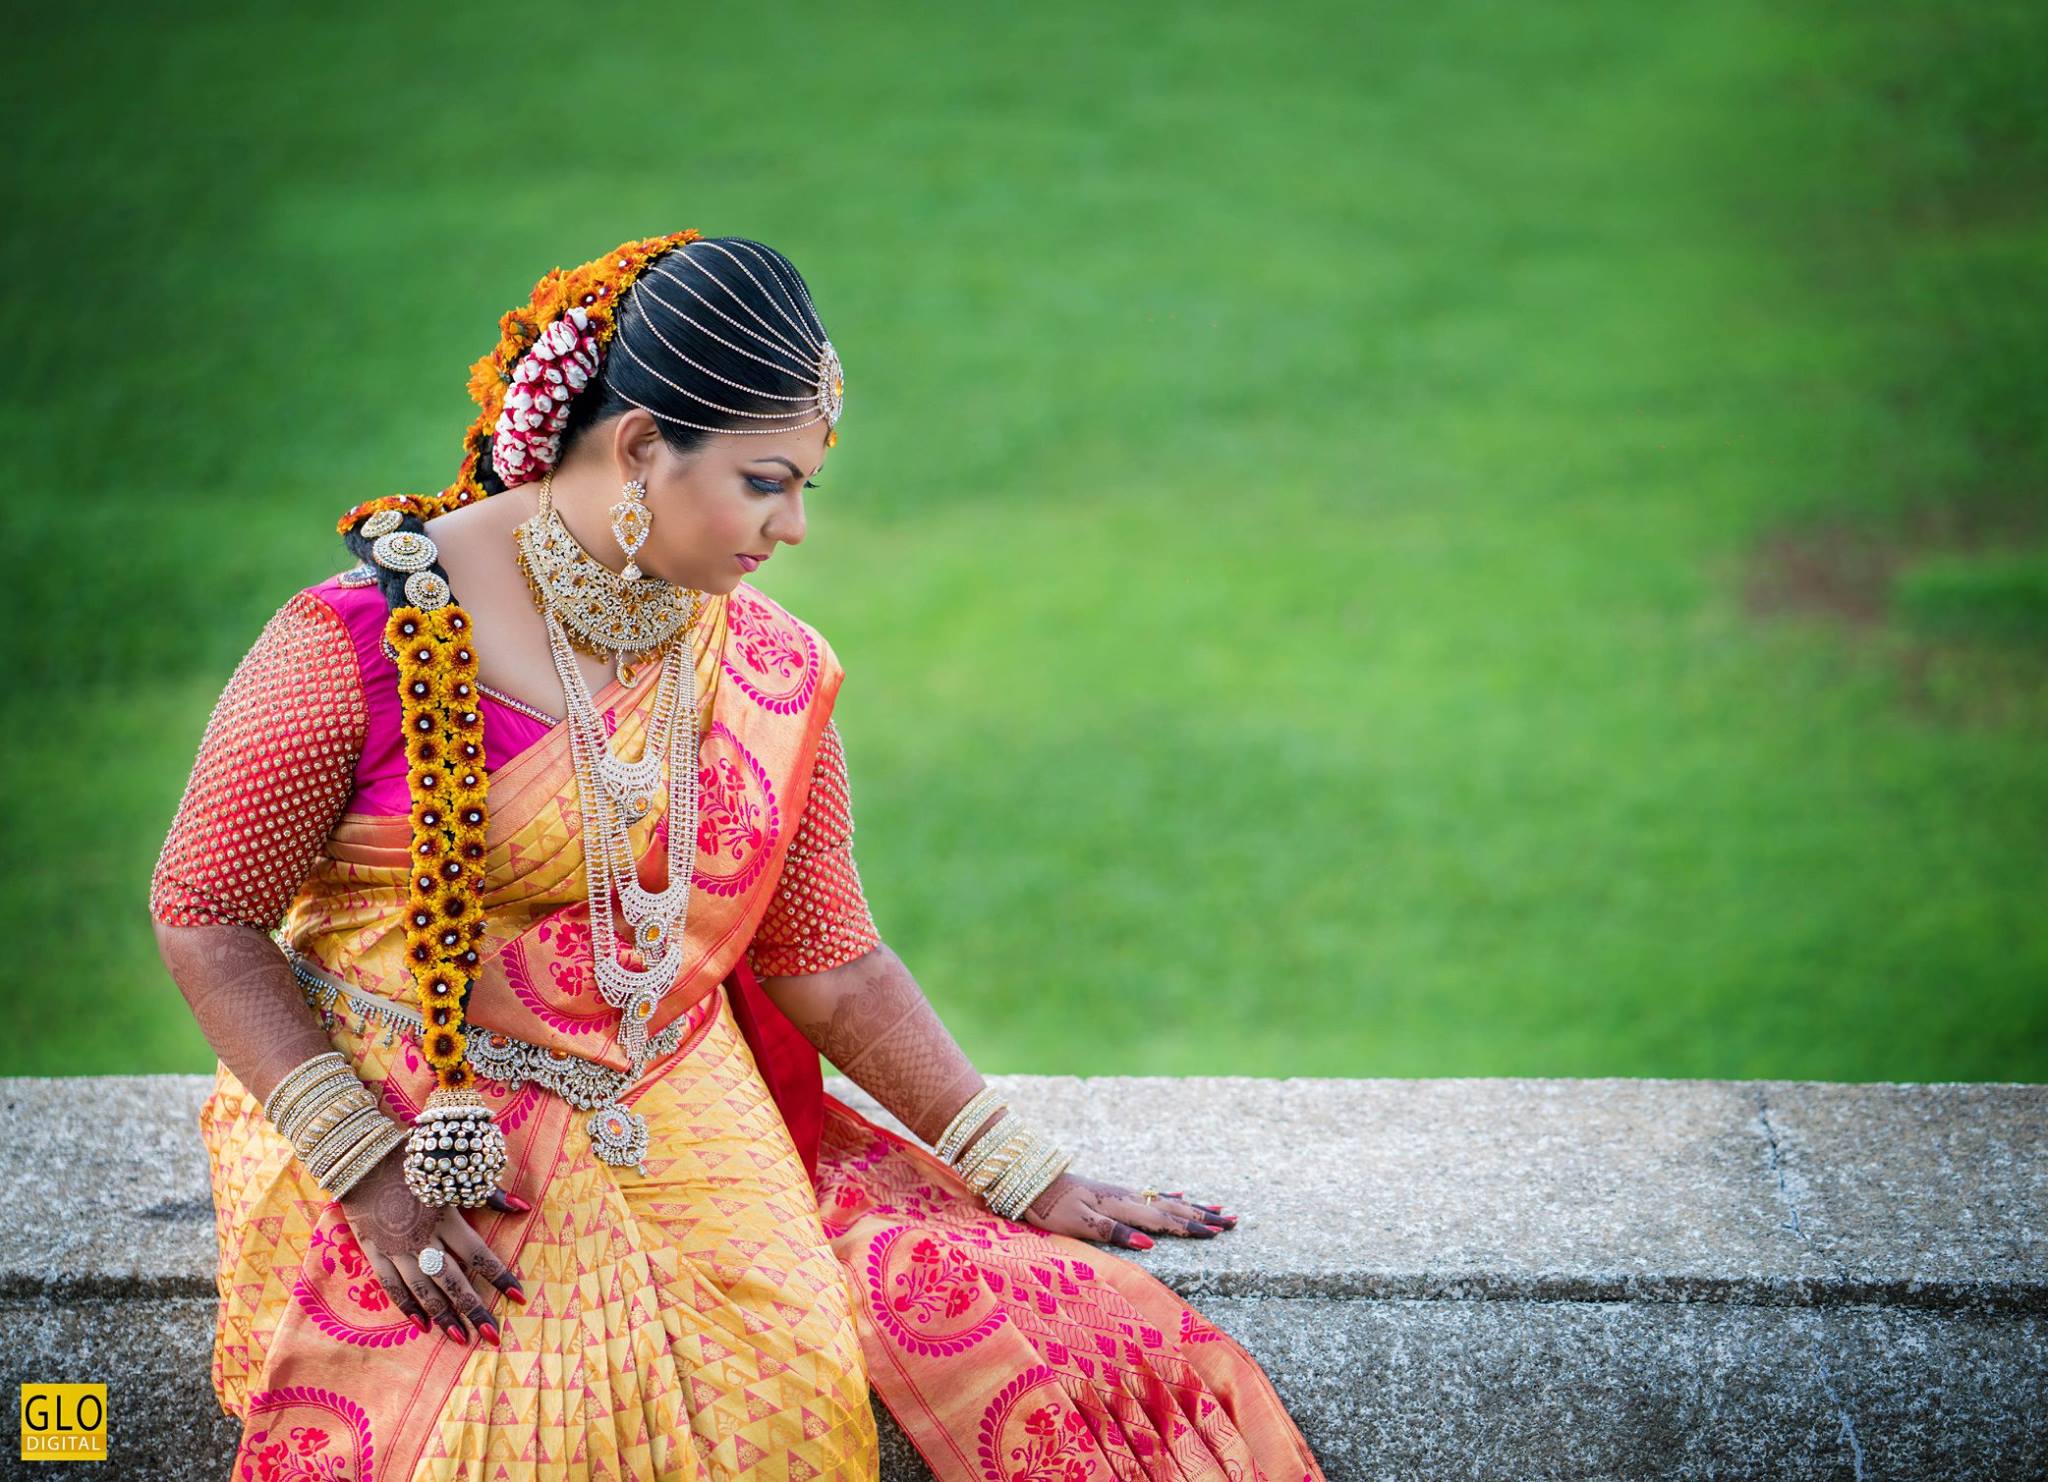 Seemantham krishnar jadai | Bridal hairstyle indian wedding, Flower  fashion, Easy rangoli designs